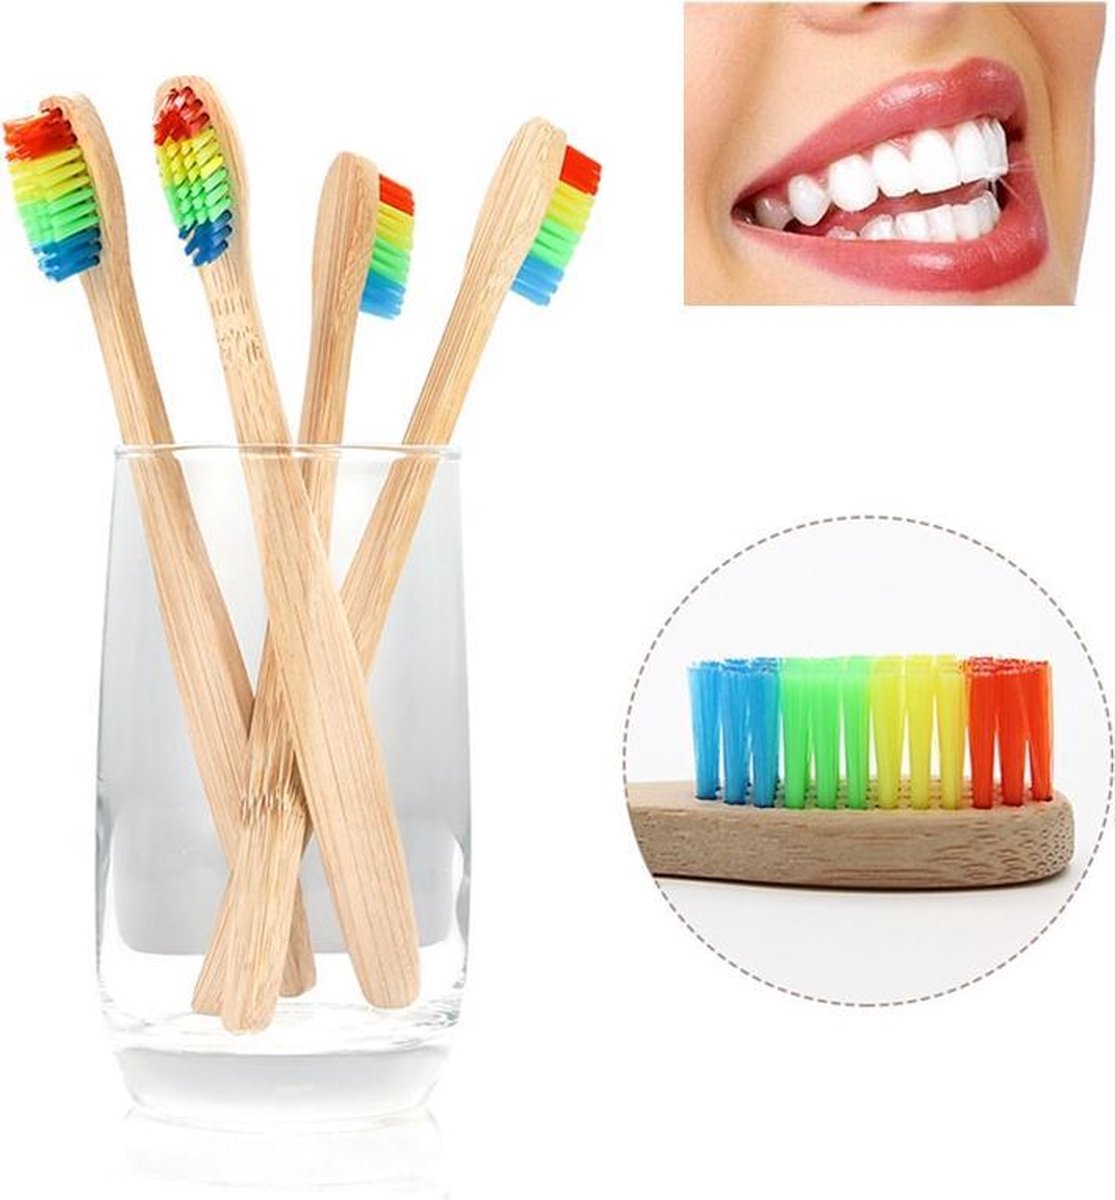 Bamboe Tandenborstel | Regenboog | 4 Stuks | Recyclebaar en Biologisch Afbreekbaar | Zacht / Medium | Voor Gevoelig Tandvlees